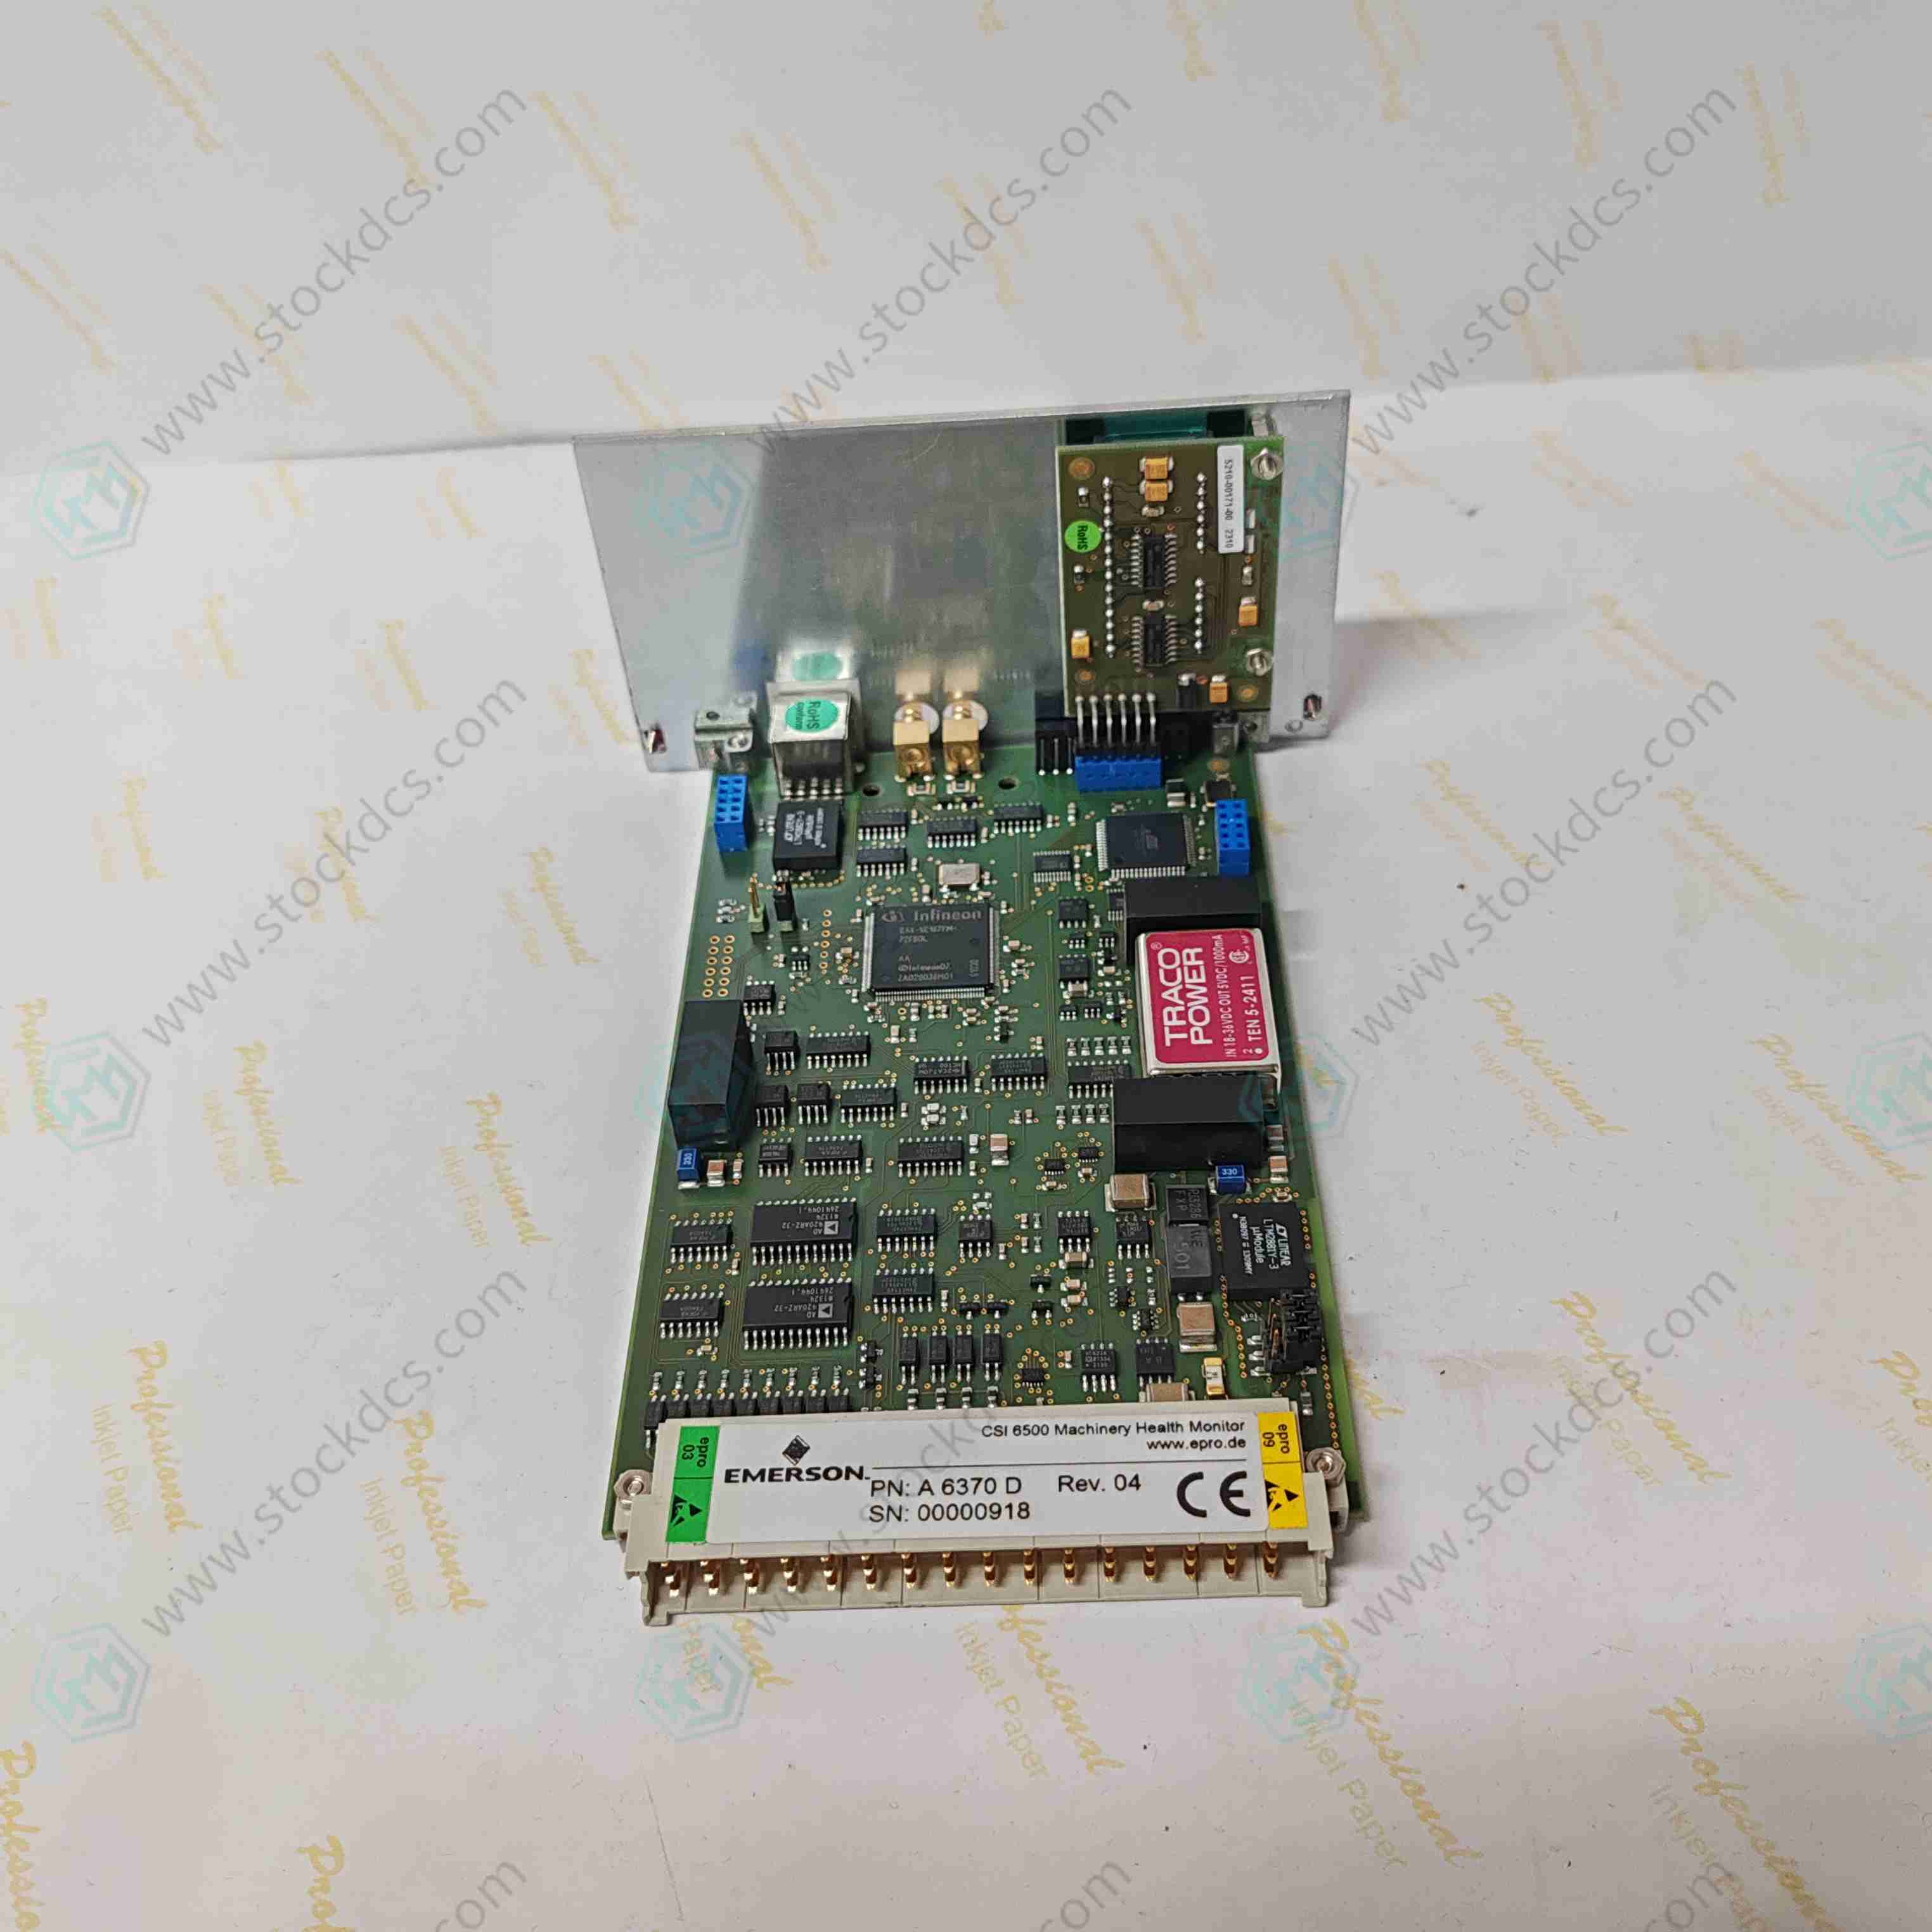 EMERSON A6370D Analog Input Card